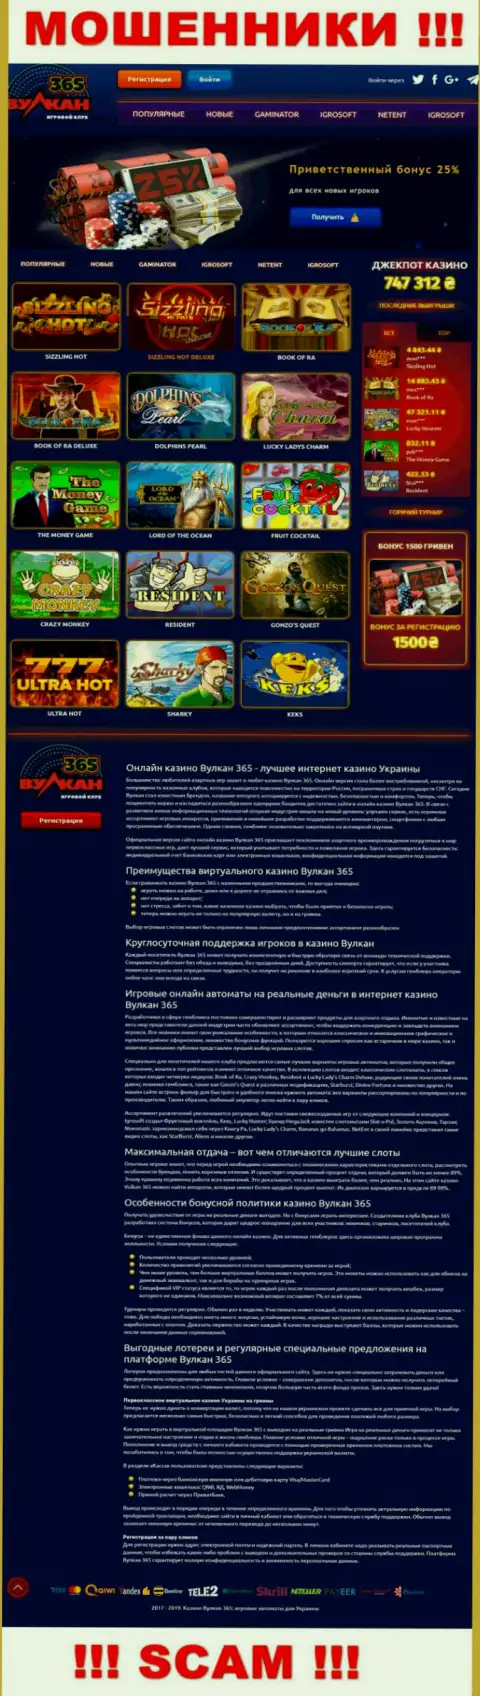 Официальный веб-сайт Вулкан365 Бет - это красивая страница для завлечения будущих клиентов